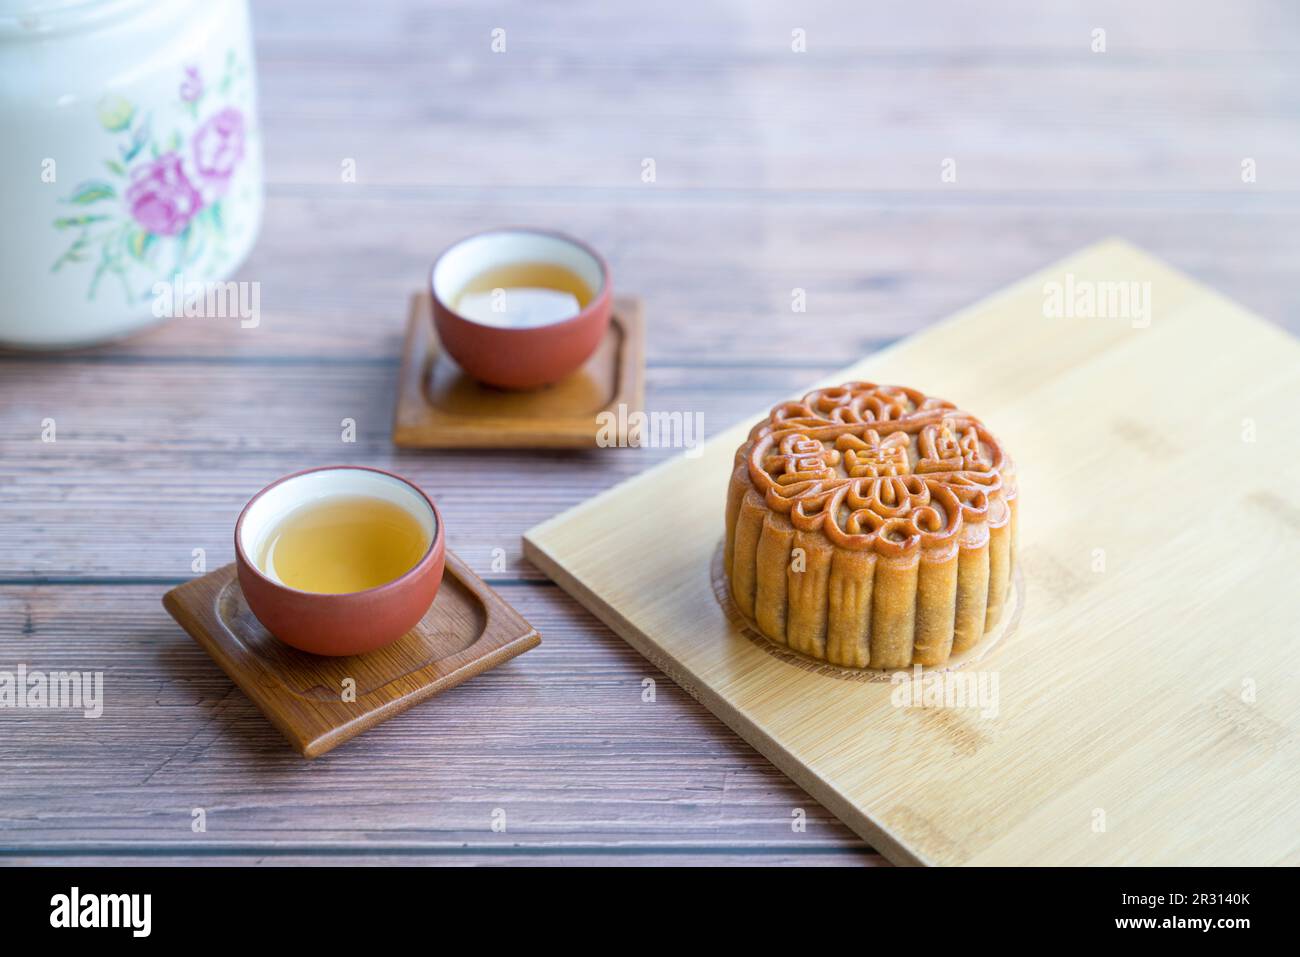 Gâteau de lune servi avec du thé chinois. Concept du festival de la mi-automne. Copier l'espace. Banque D'Images